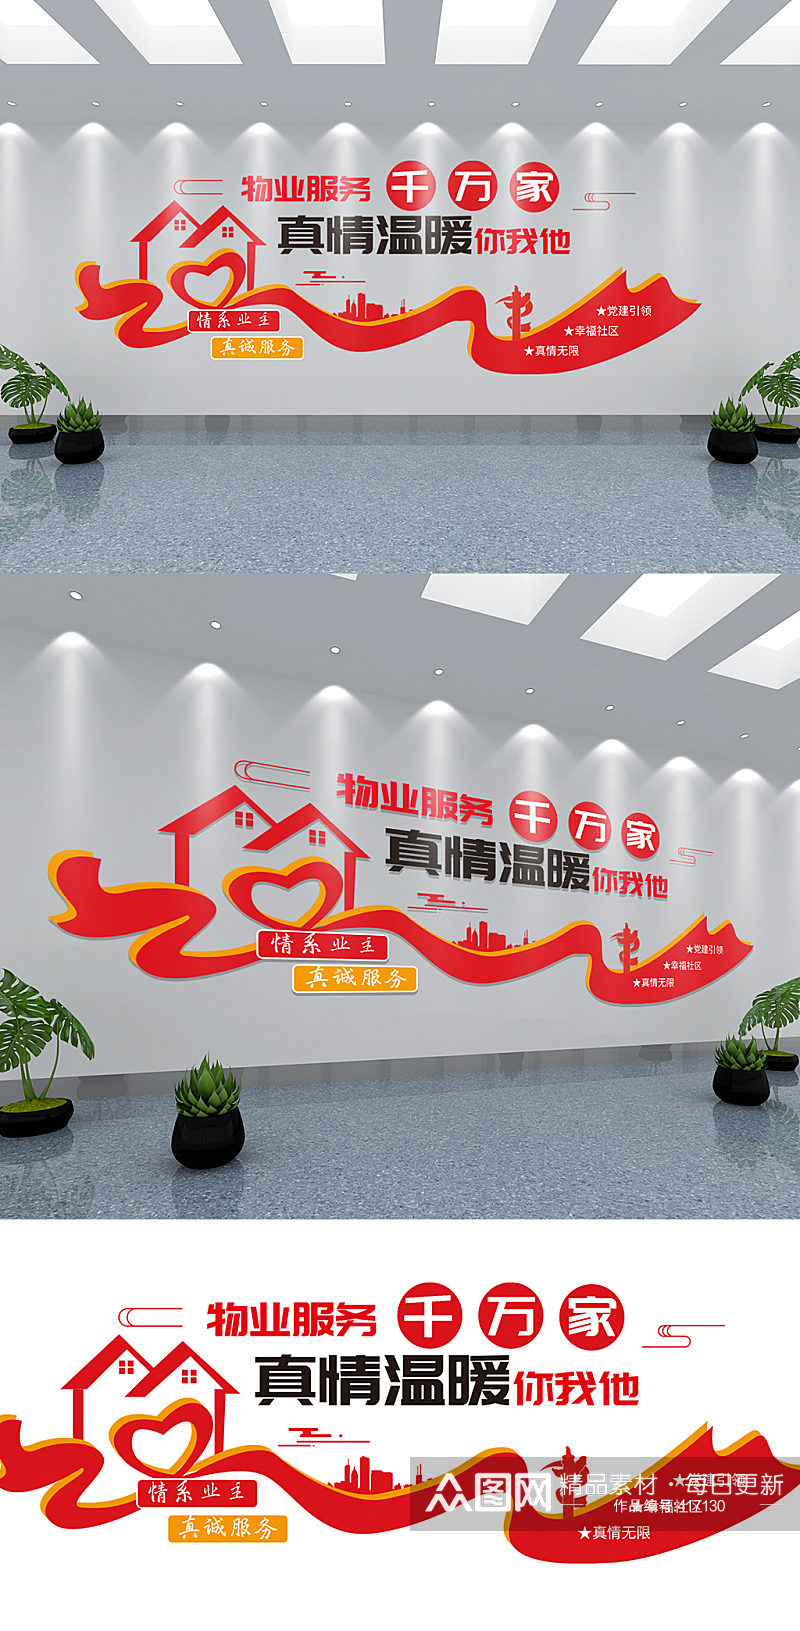 红色简洁物业保安公司企业文化墙设计展板素材